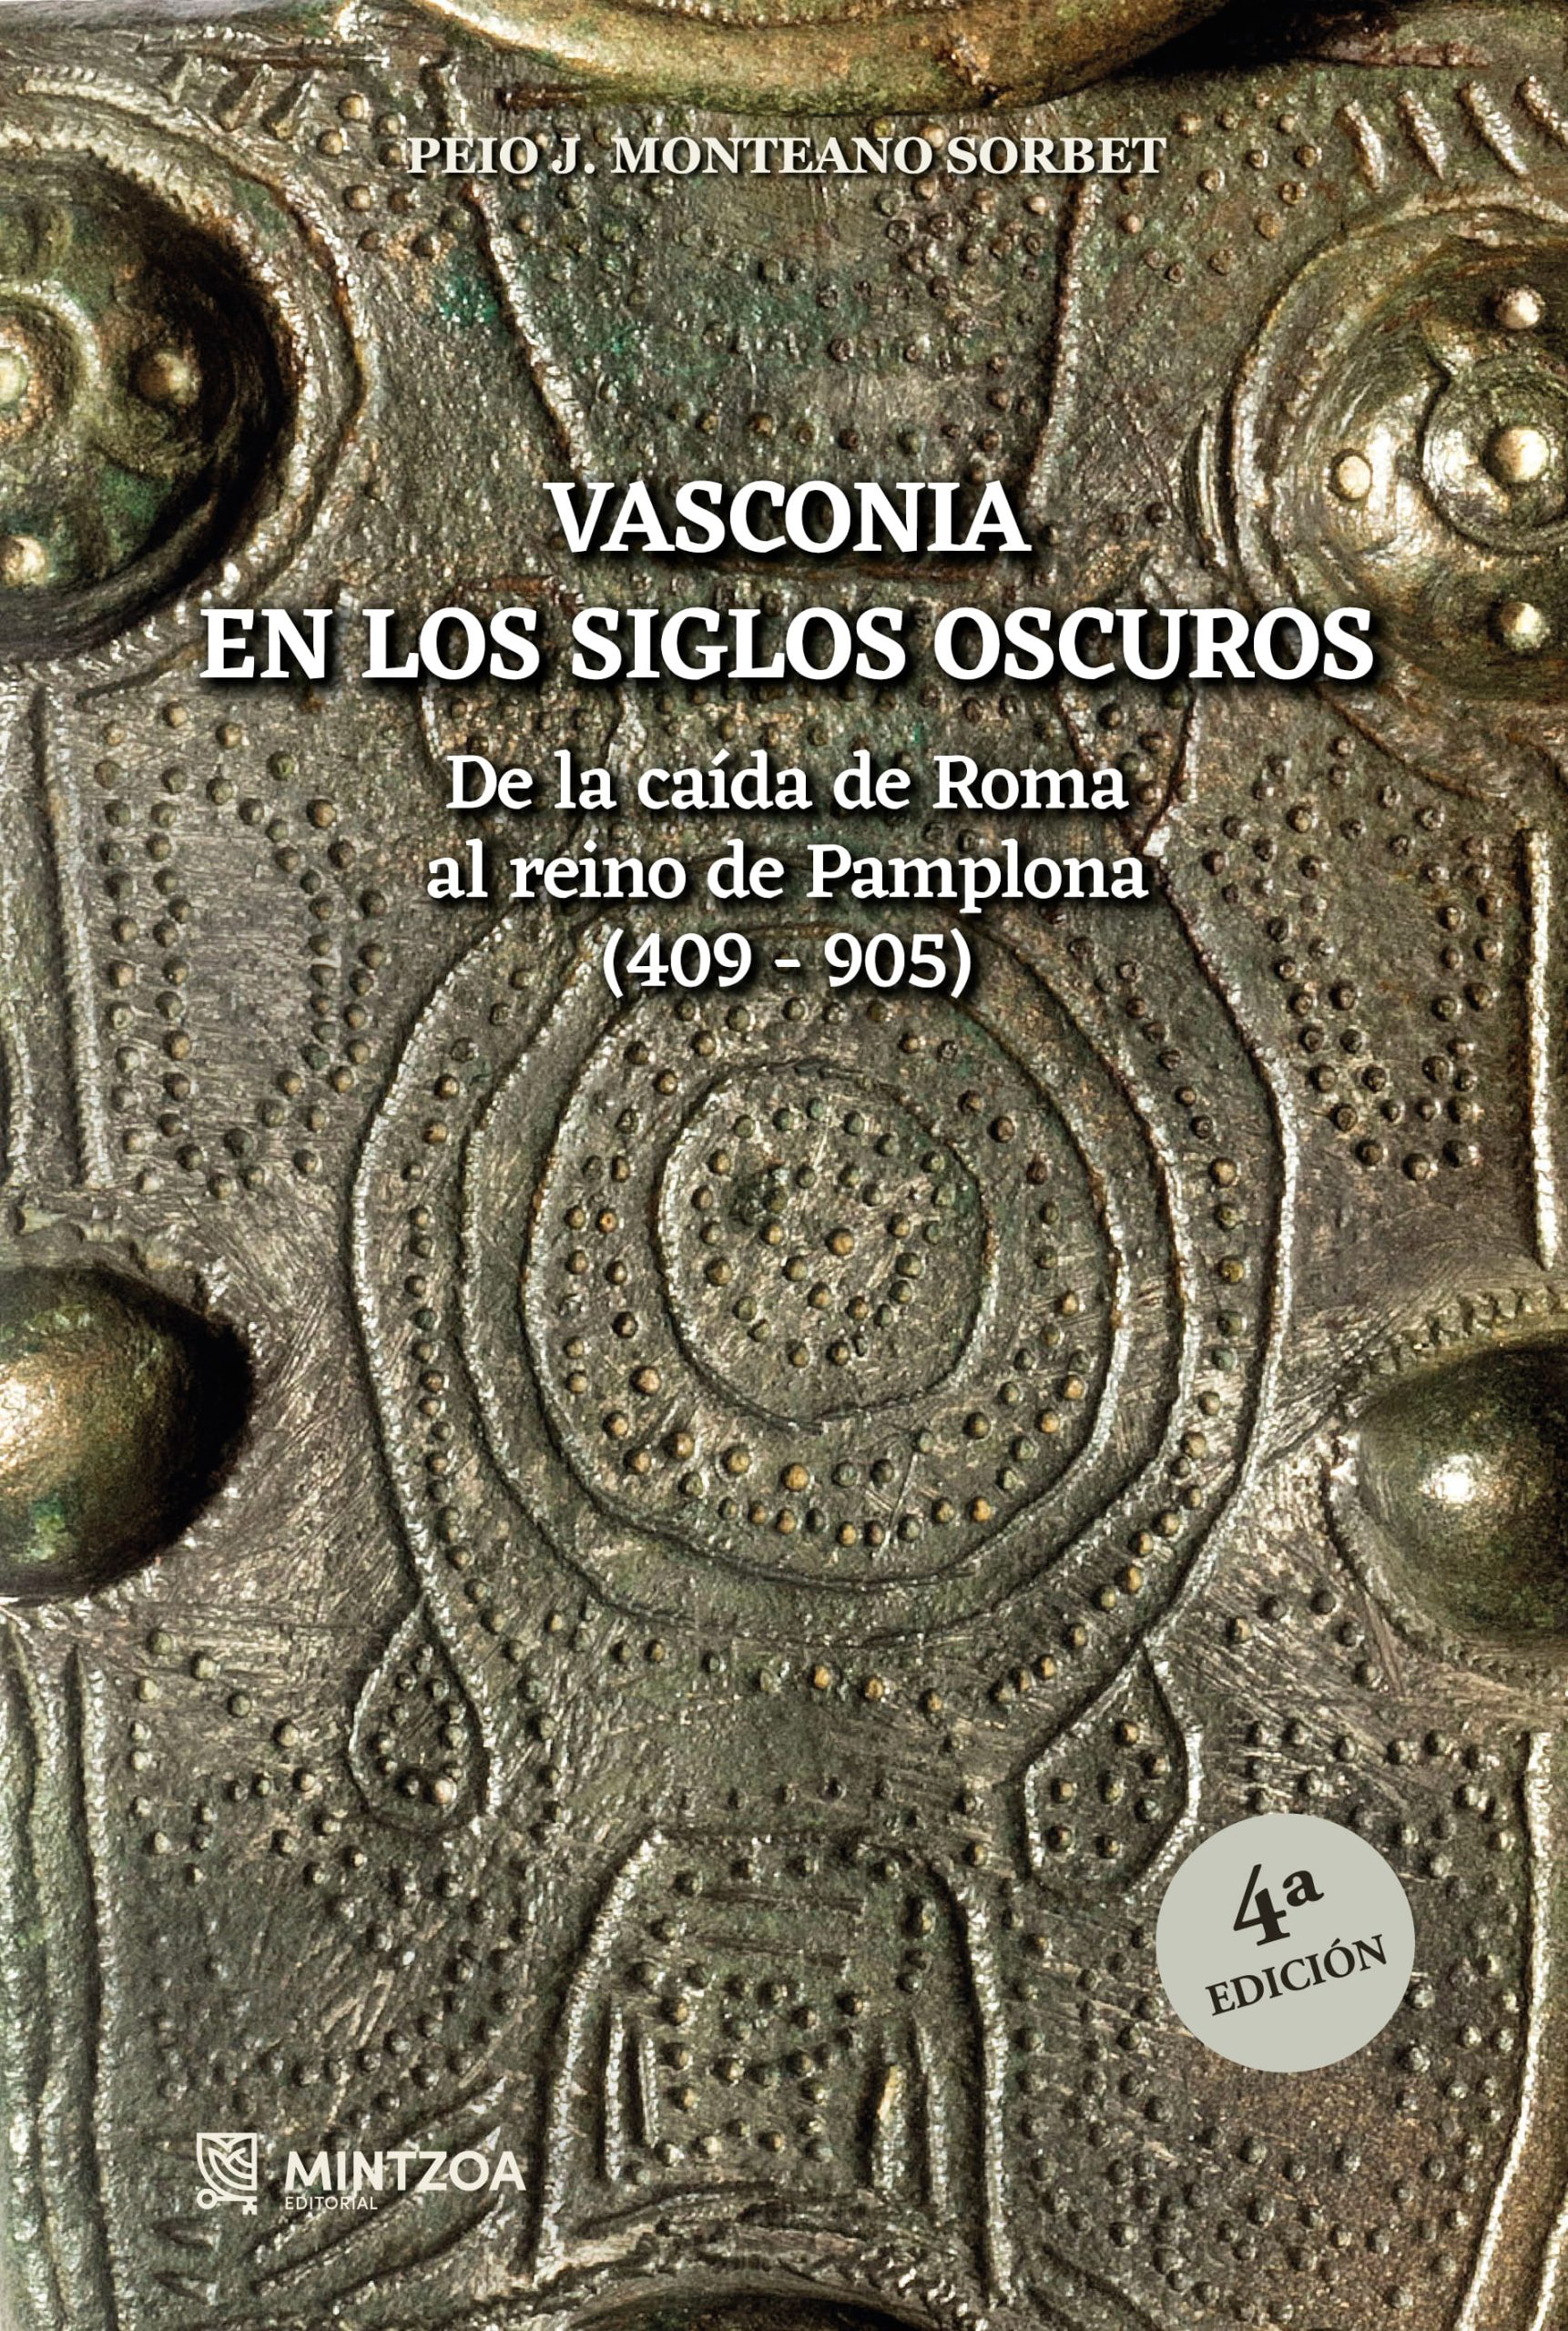 VASCONIA EN LOS SIGLOS OSCUROS. De la caída de Roma al reino de Pamplona (409-905)- 4ª Edición